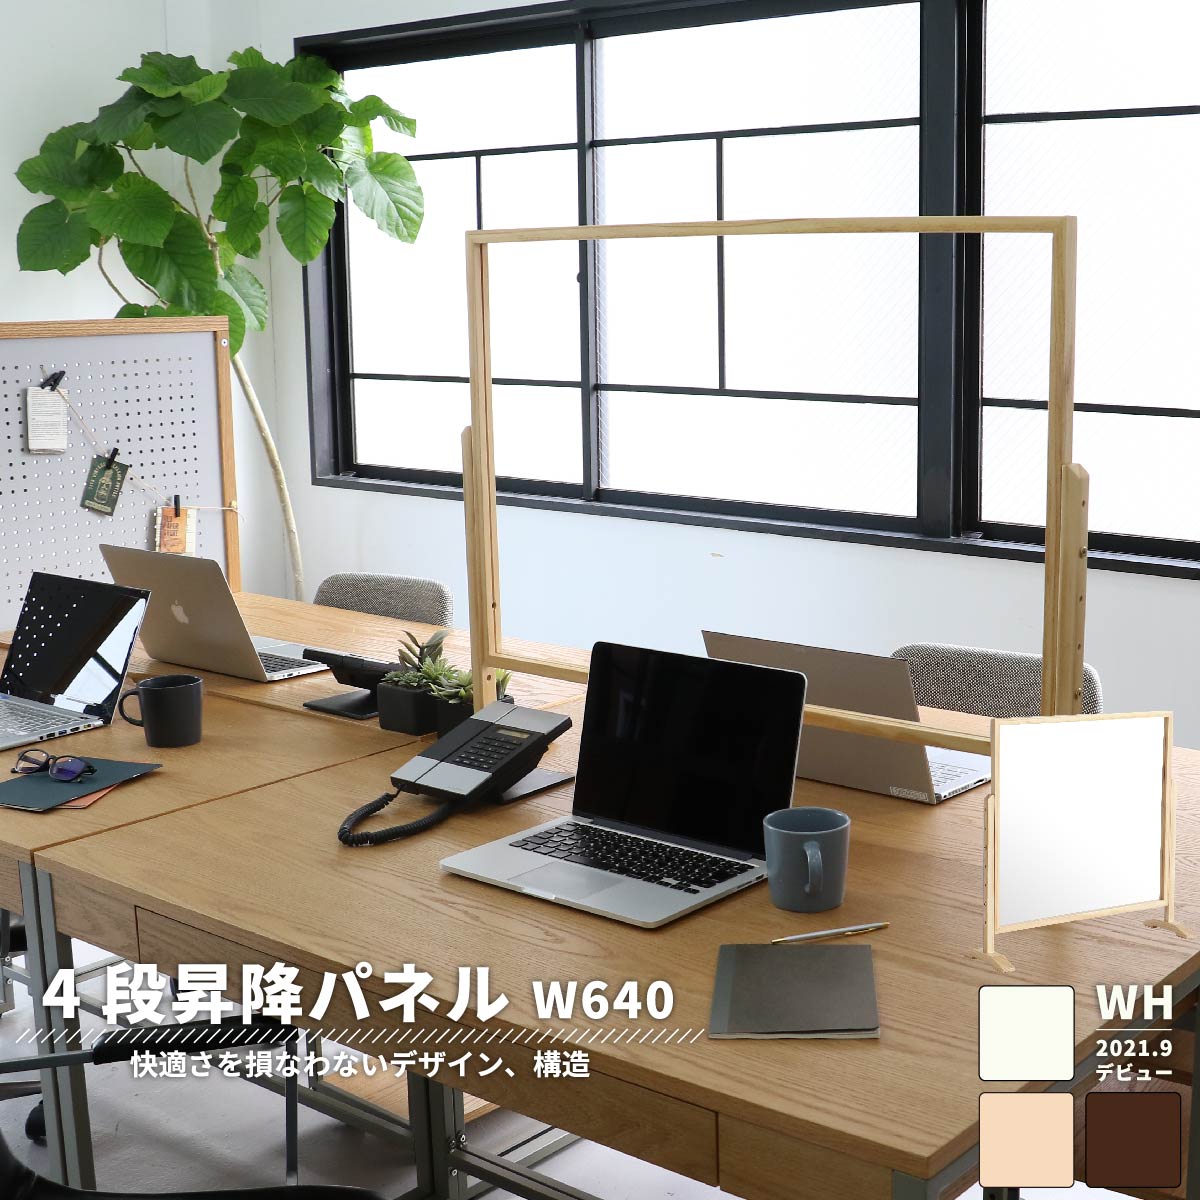 【楽天市場】アクリル板 コロナ対策 幅90 高さ調整 おしゃれ 木製